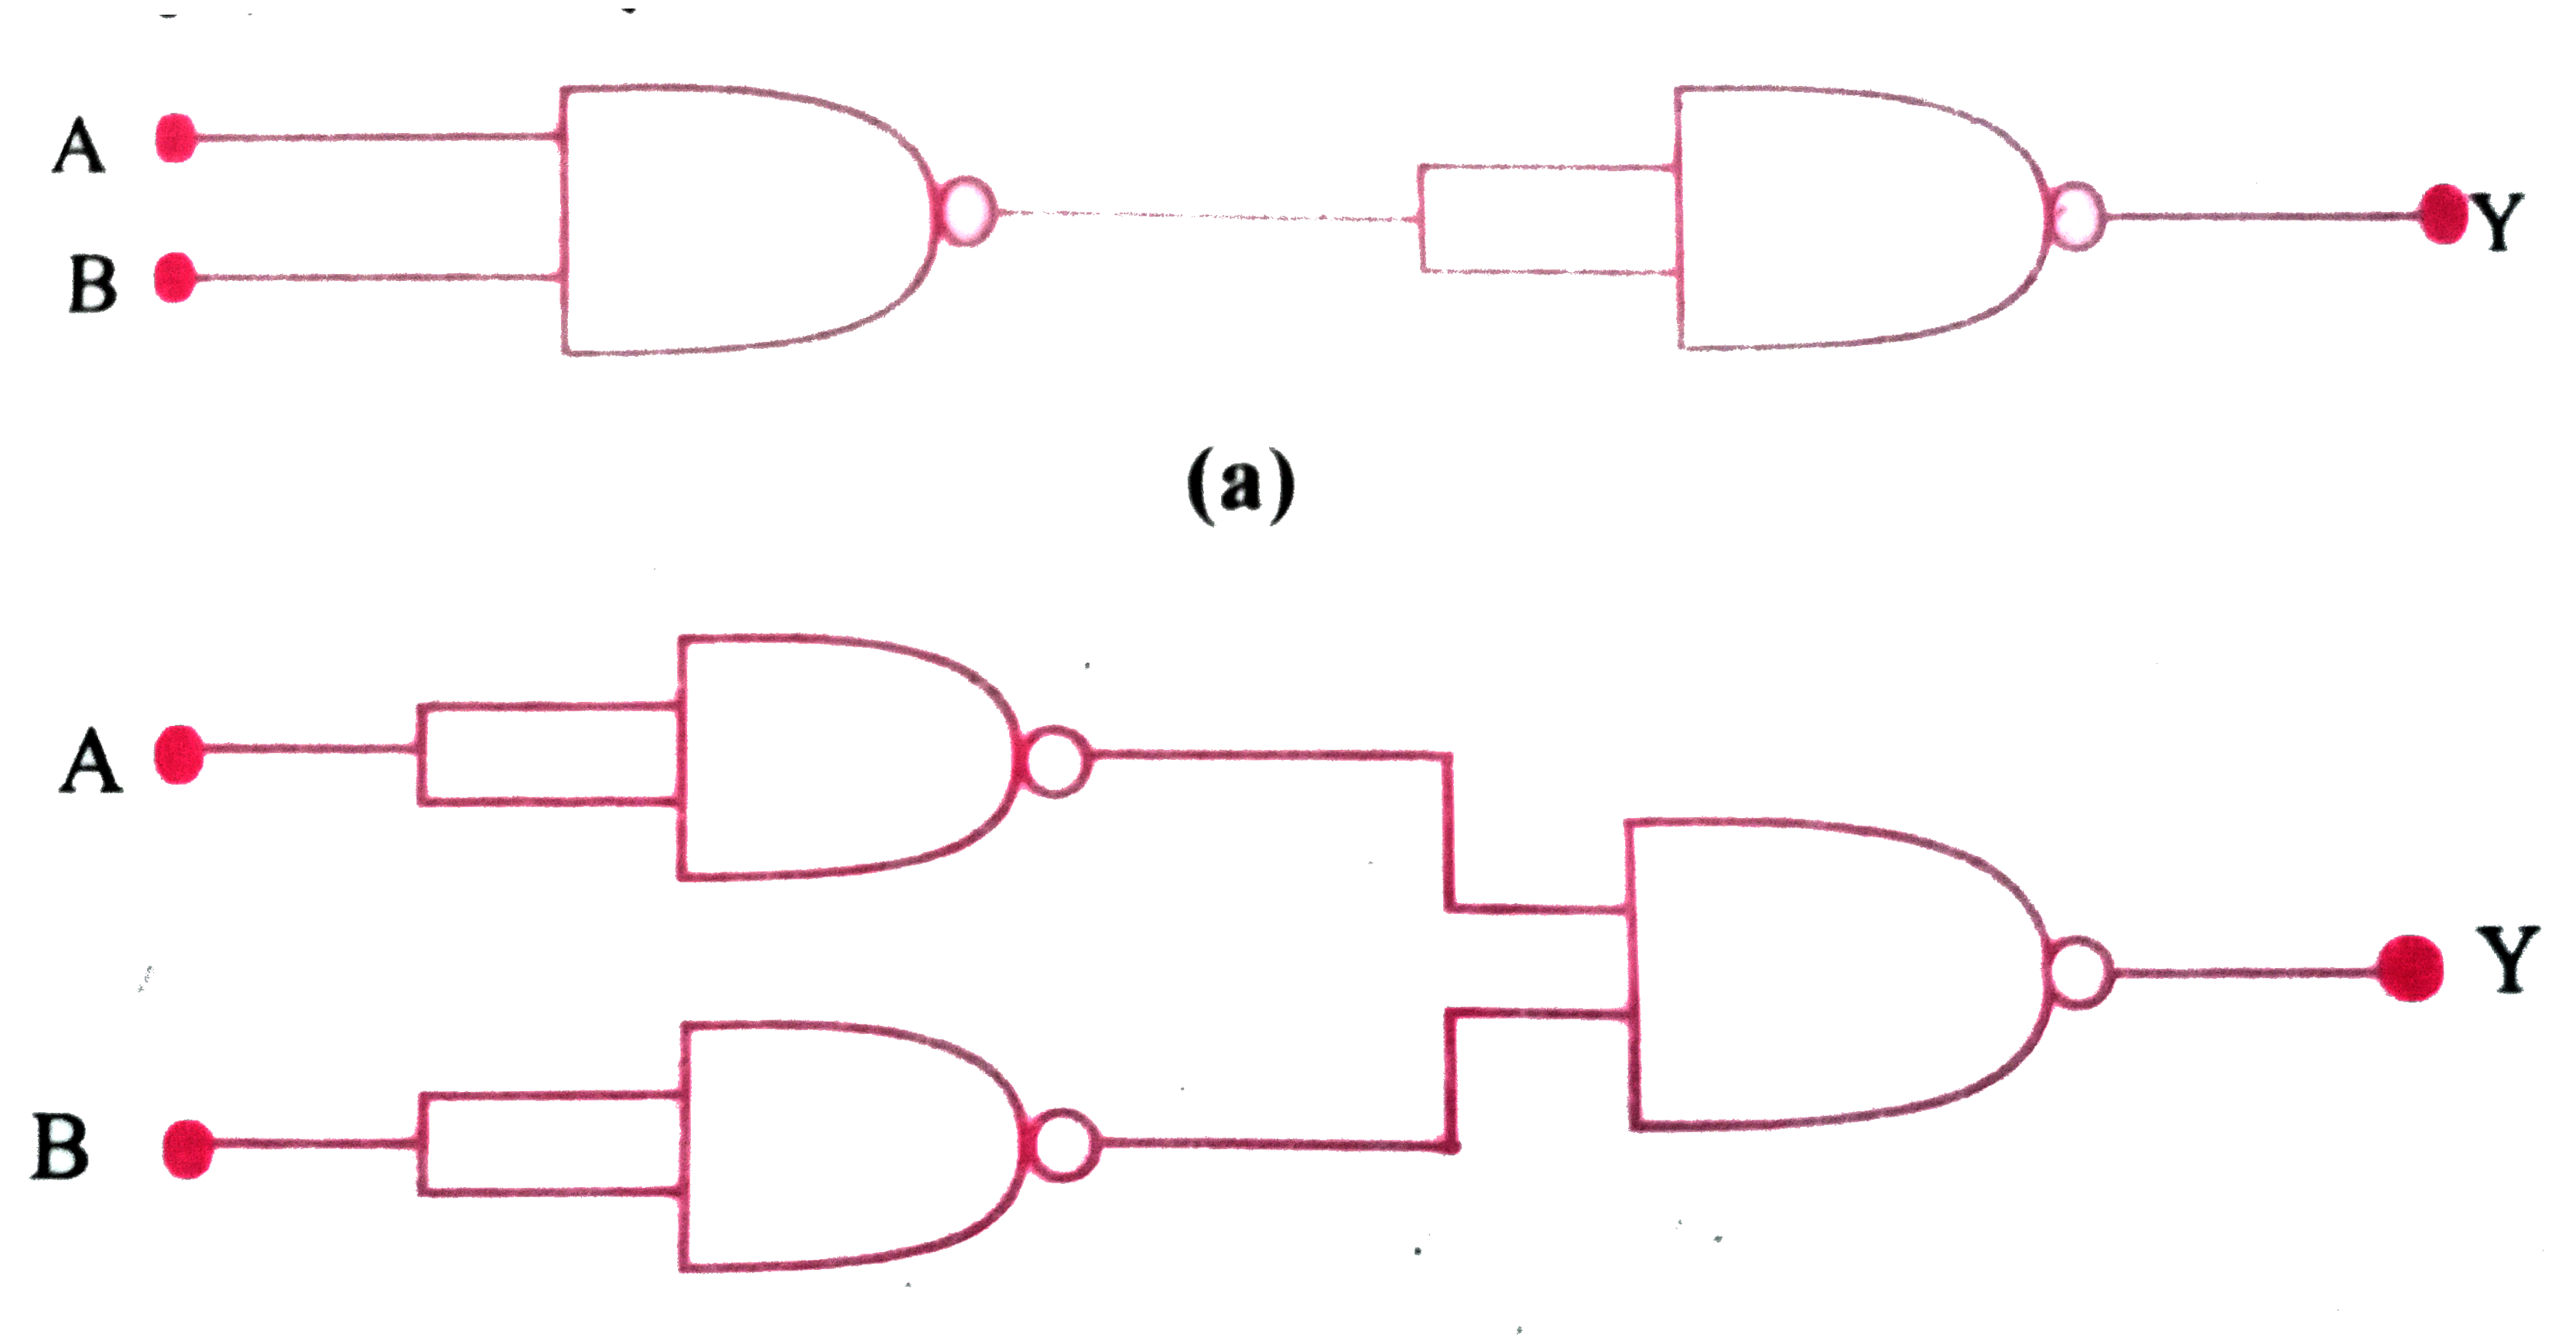 आपको निम्न चित्र में दर्शाए अनुसार परिपथ दिए गए हैं जिनमें NAND गेट जुड़े हैं। इन दोनों परिपथों द्वारा की जाने वाली तर्क संक्रियाओं का अभिनिर्धारण (Identify ) कीजिए।